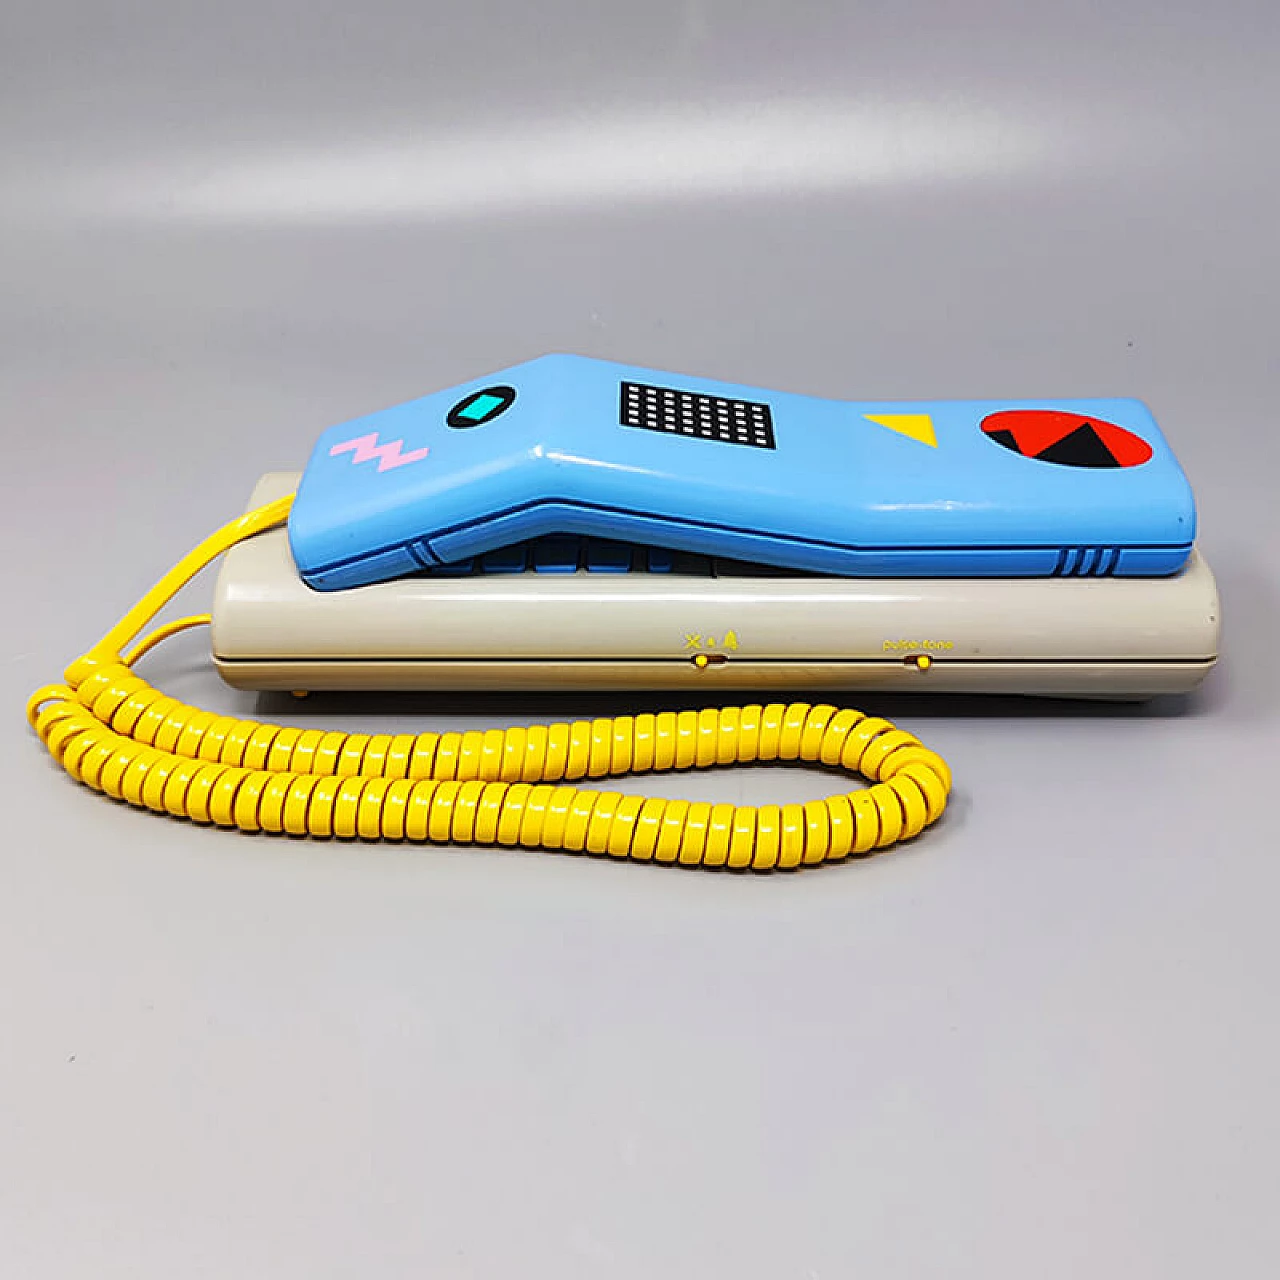 Swatch Twin Phone Deluxe landline, 1980s 2